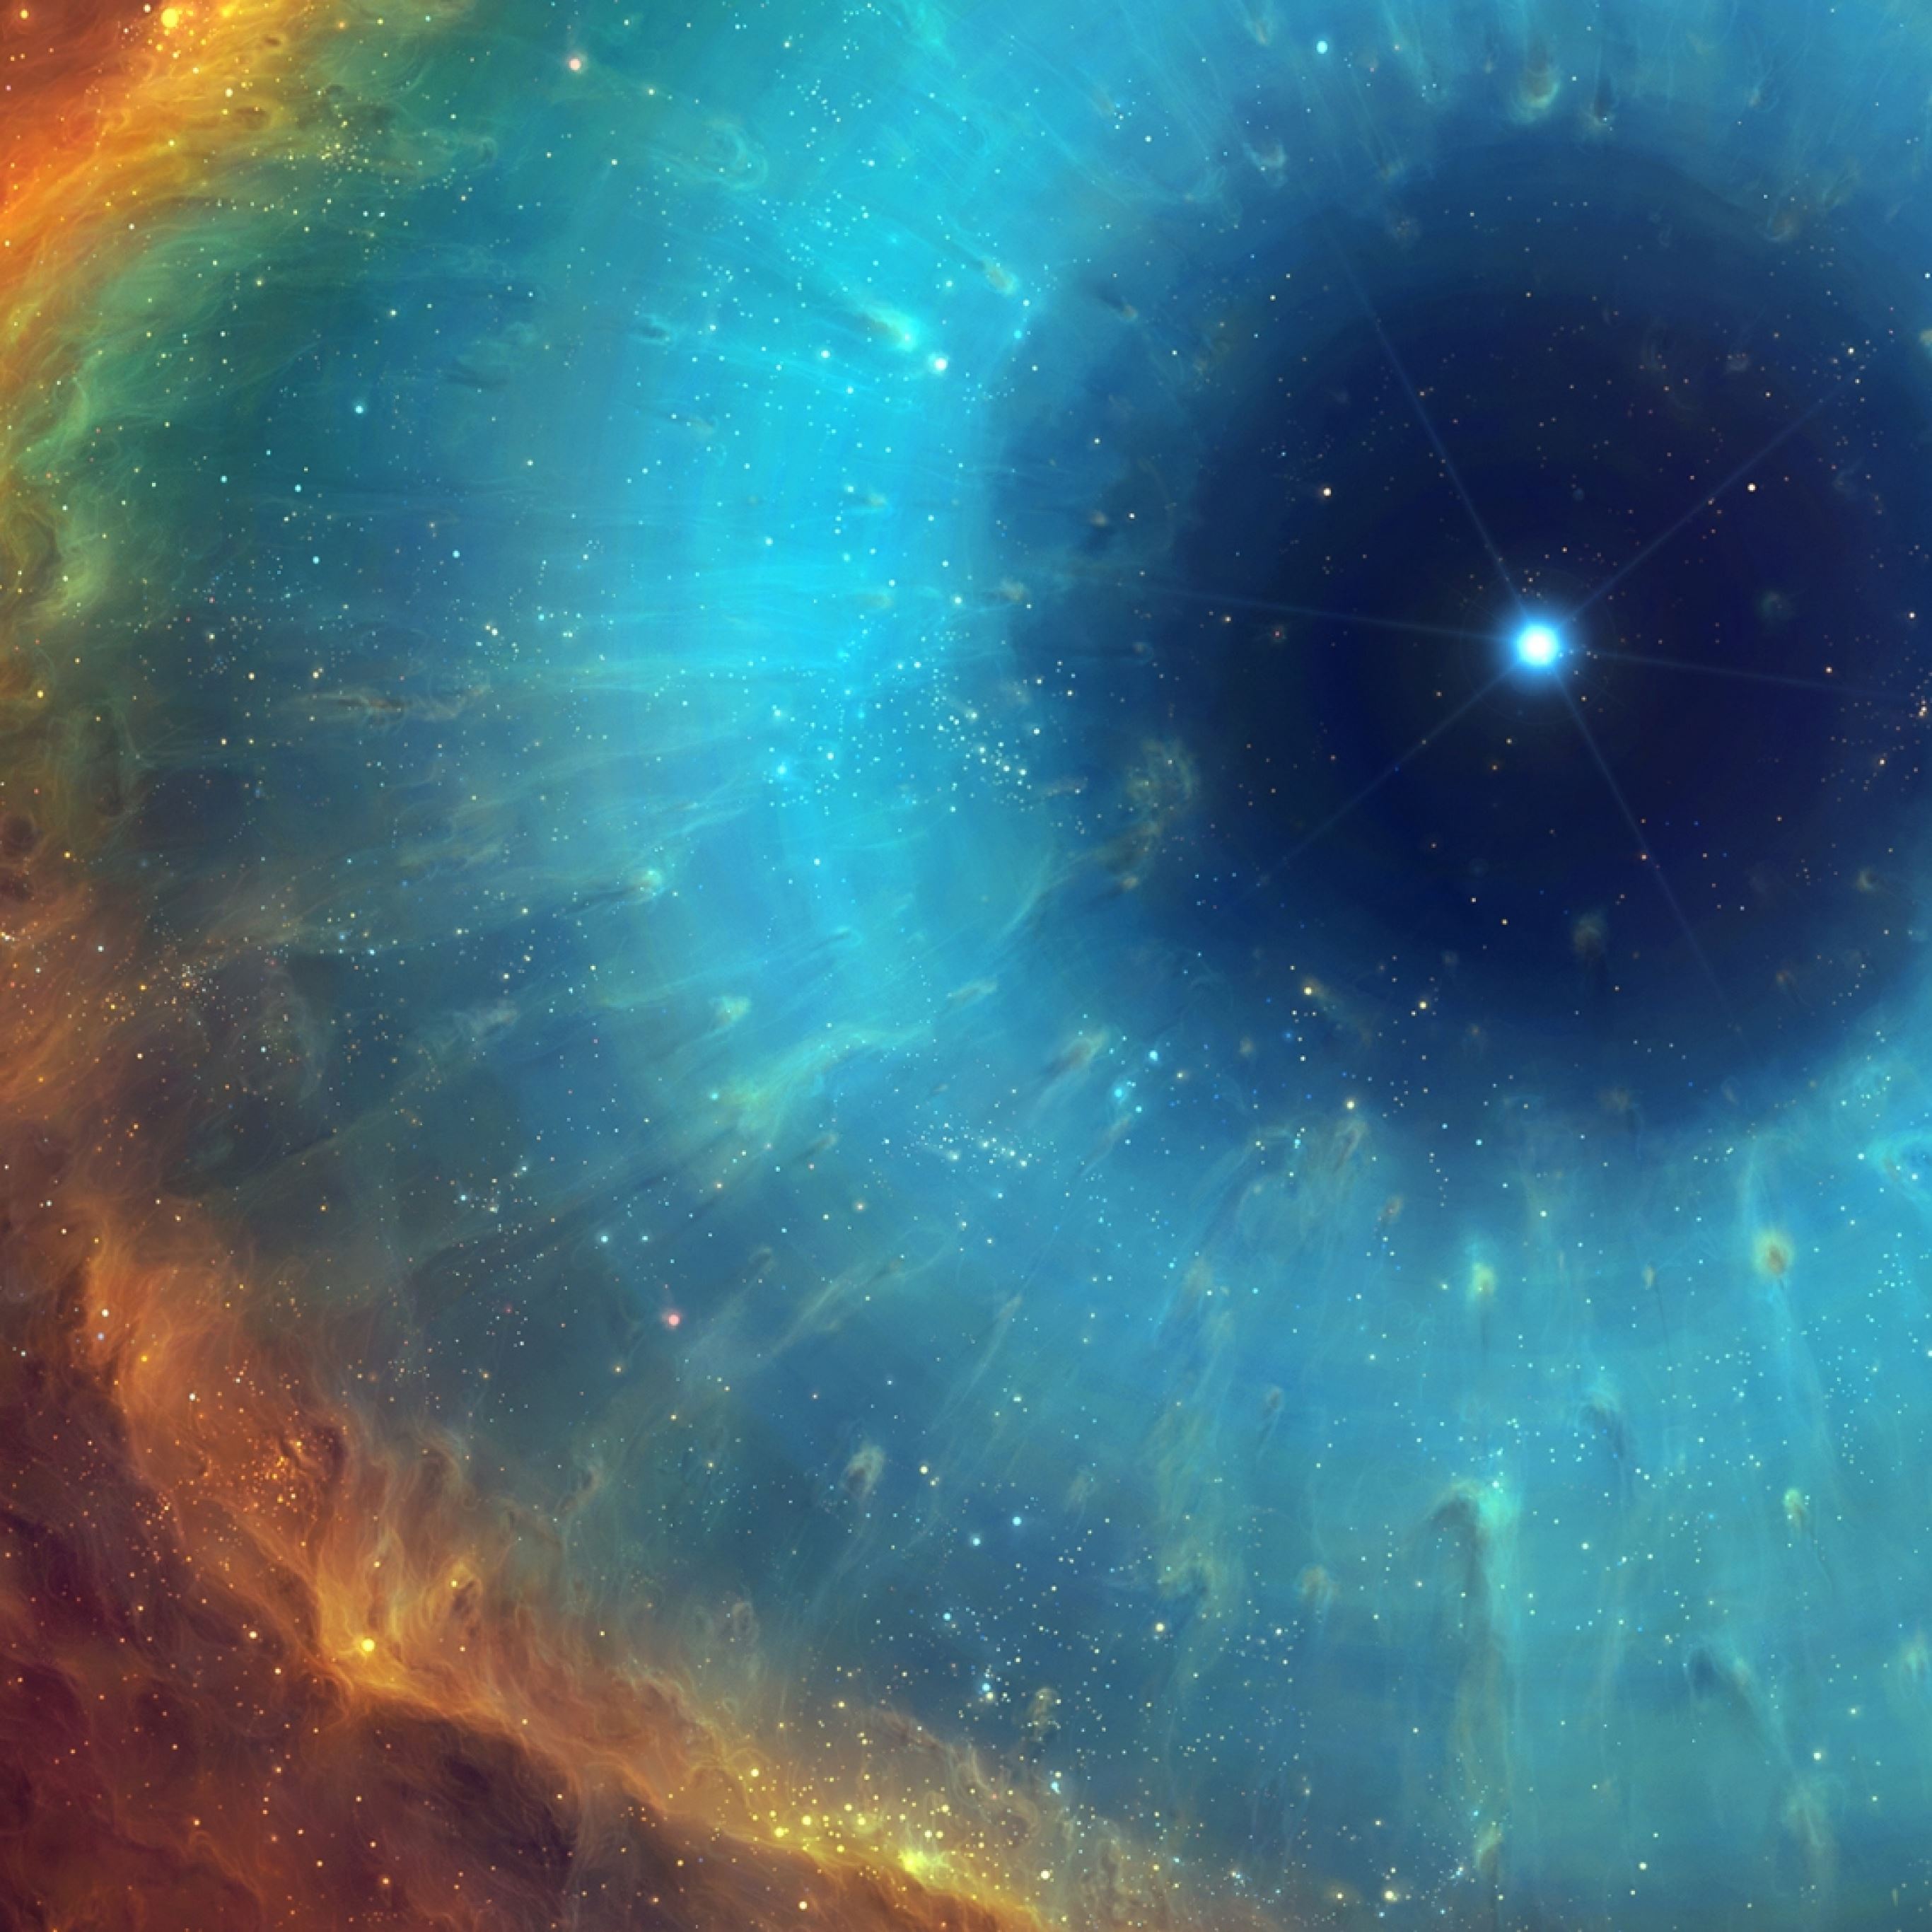 Ссылка на глаз бога. Сверхновая SN 1604 (Сверхновая Кеплера). Туманность Геликс. Тумманность Хеликс космос. Туманности в космосе.